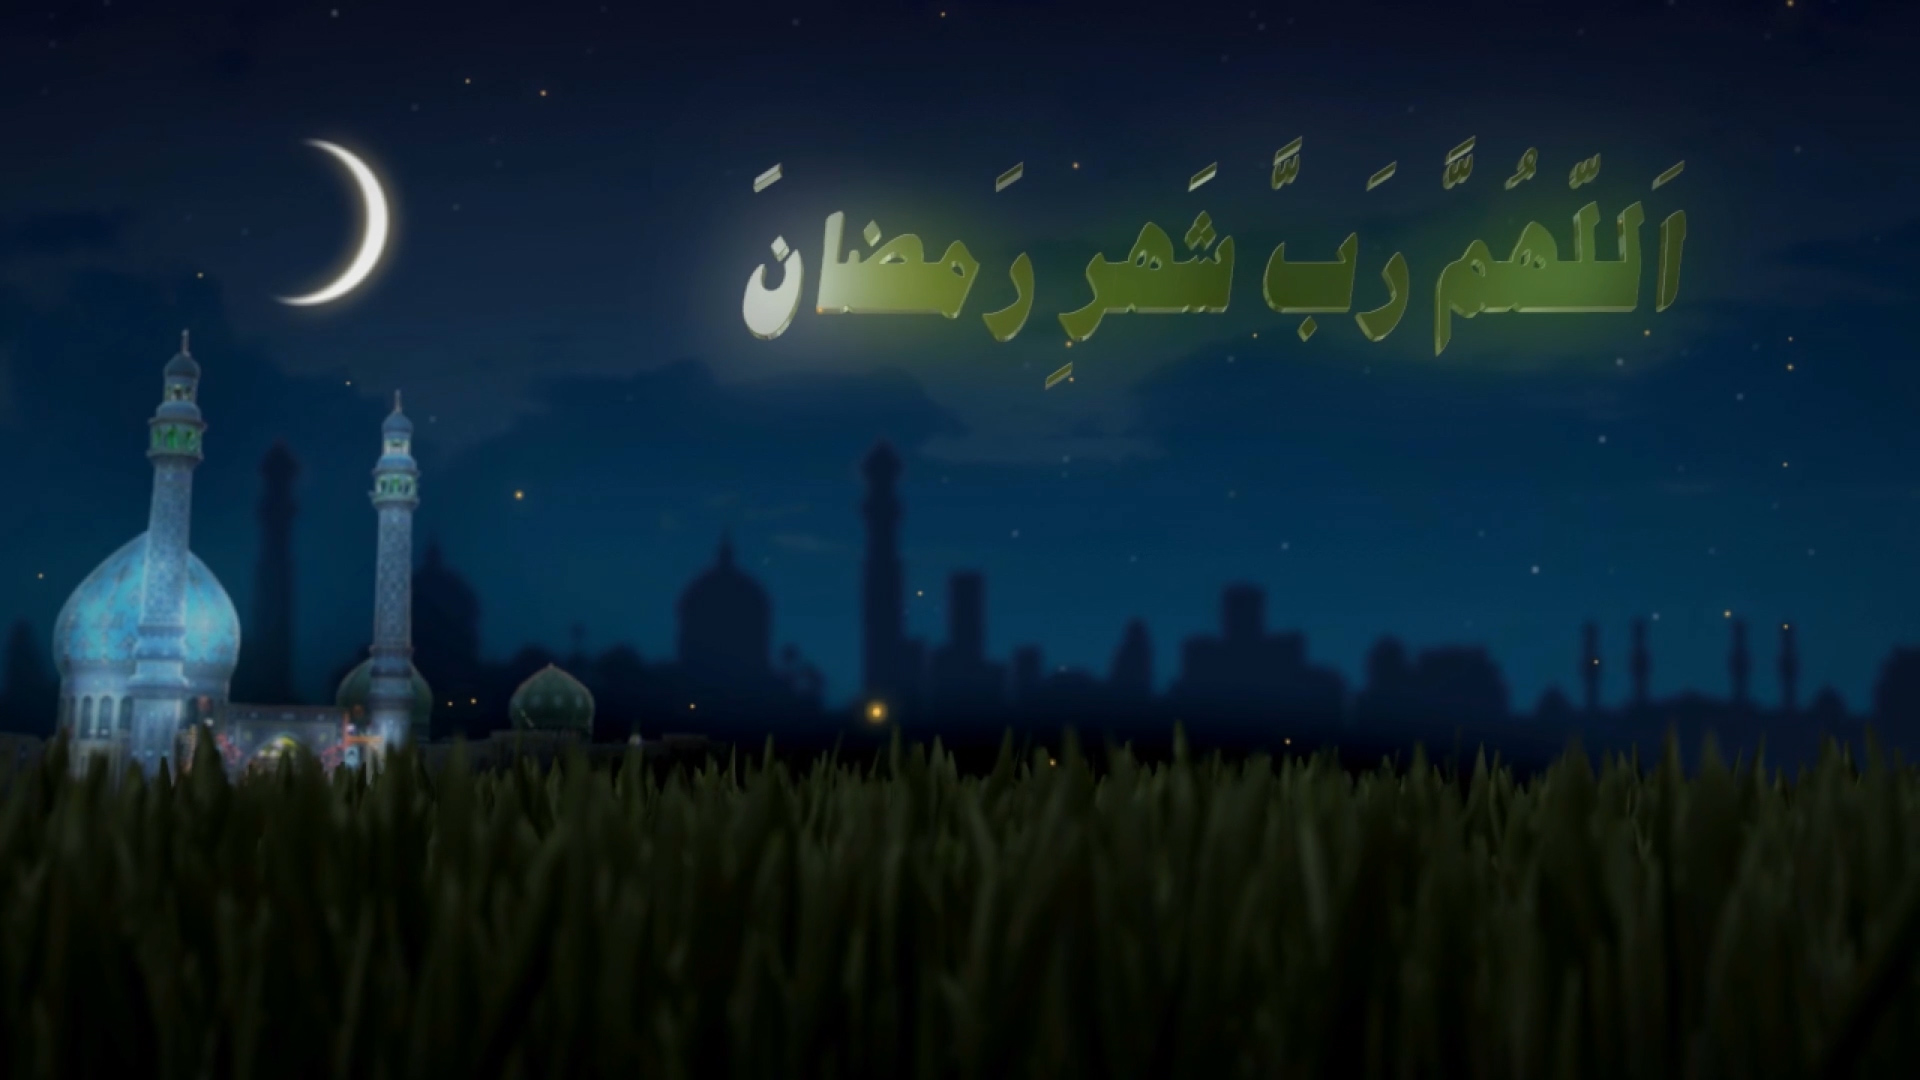 دعای ماه رمضان - حاج محمود کریمی